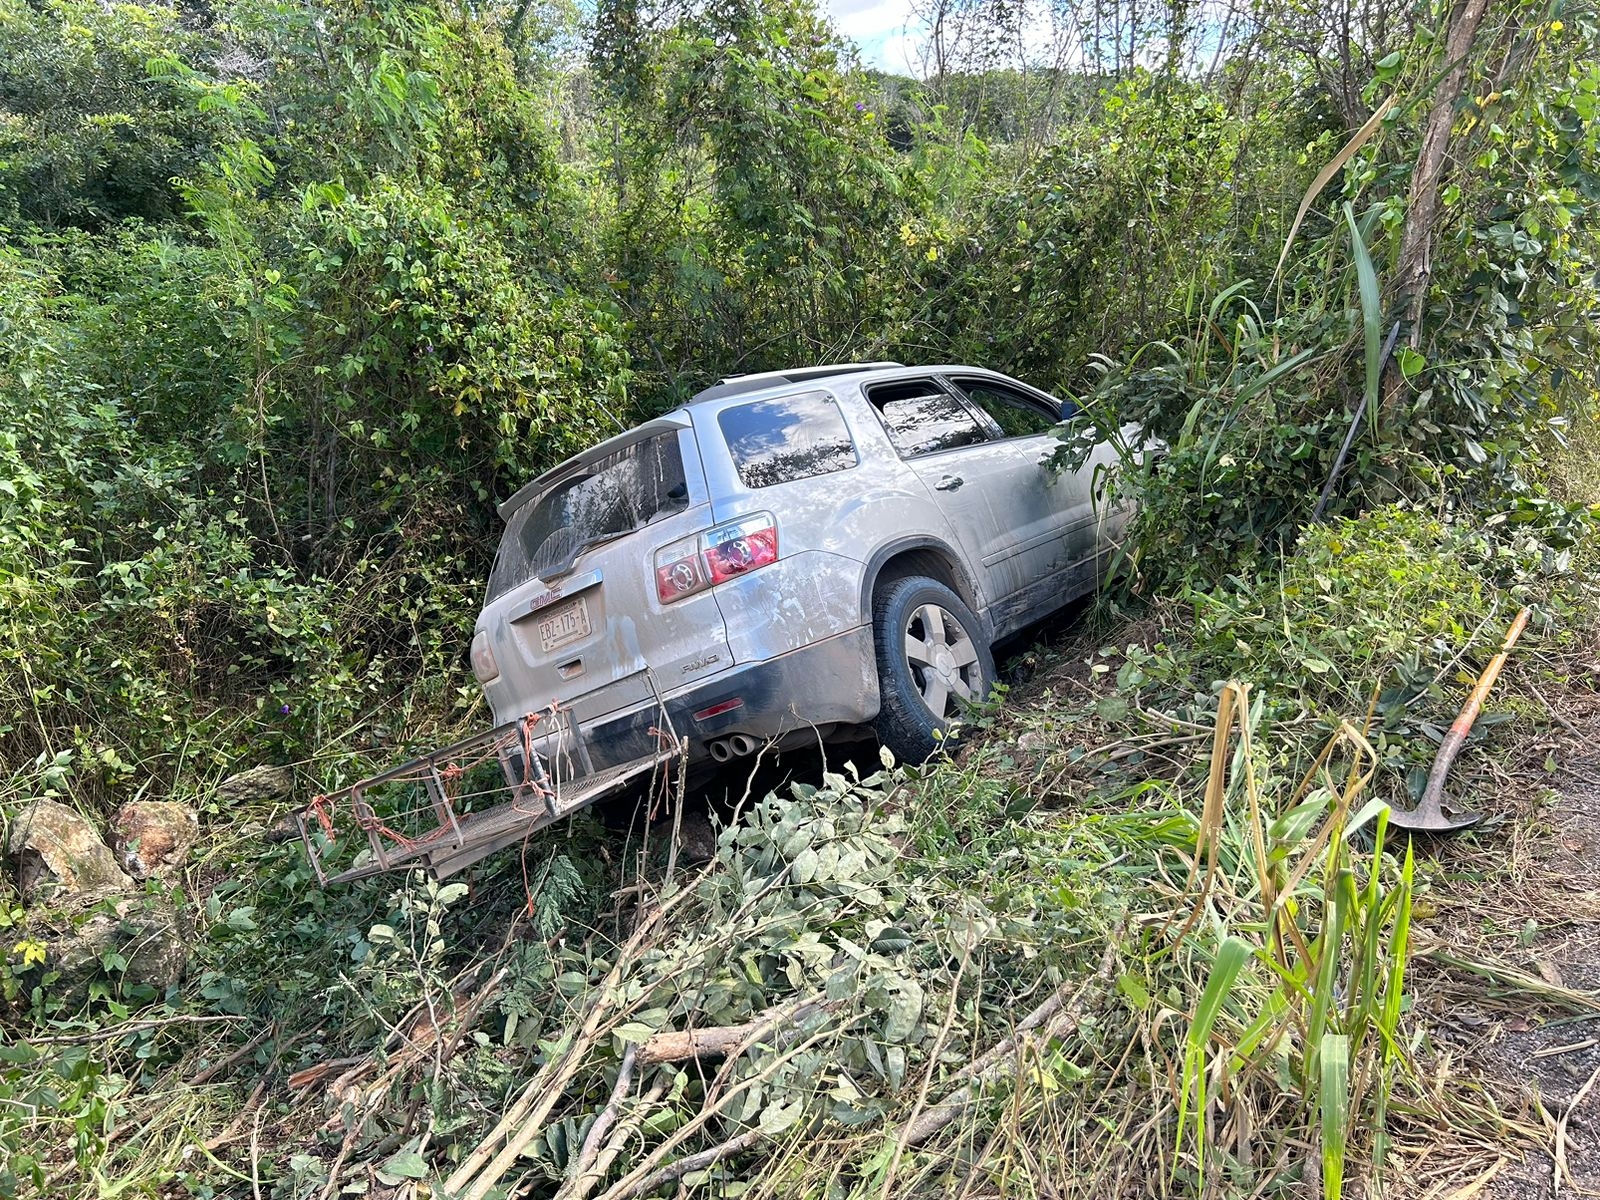 Dos accidentes dejan varios heridos y daños materiales en la carretera Hopelchén-Dzibalchén